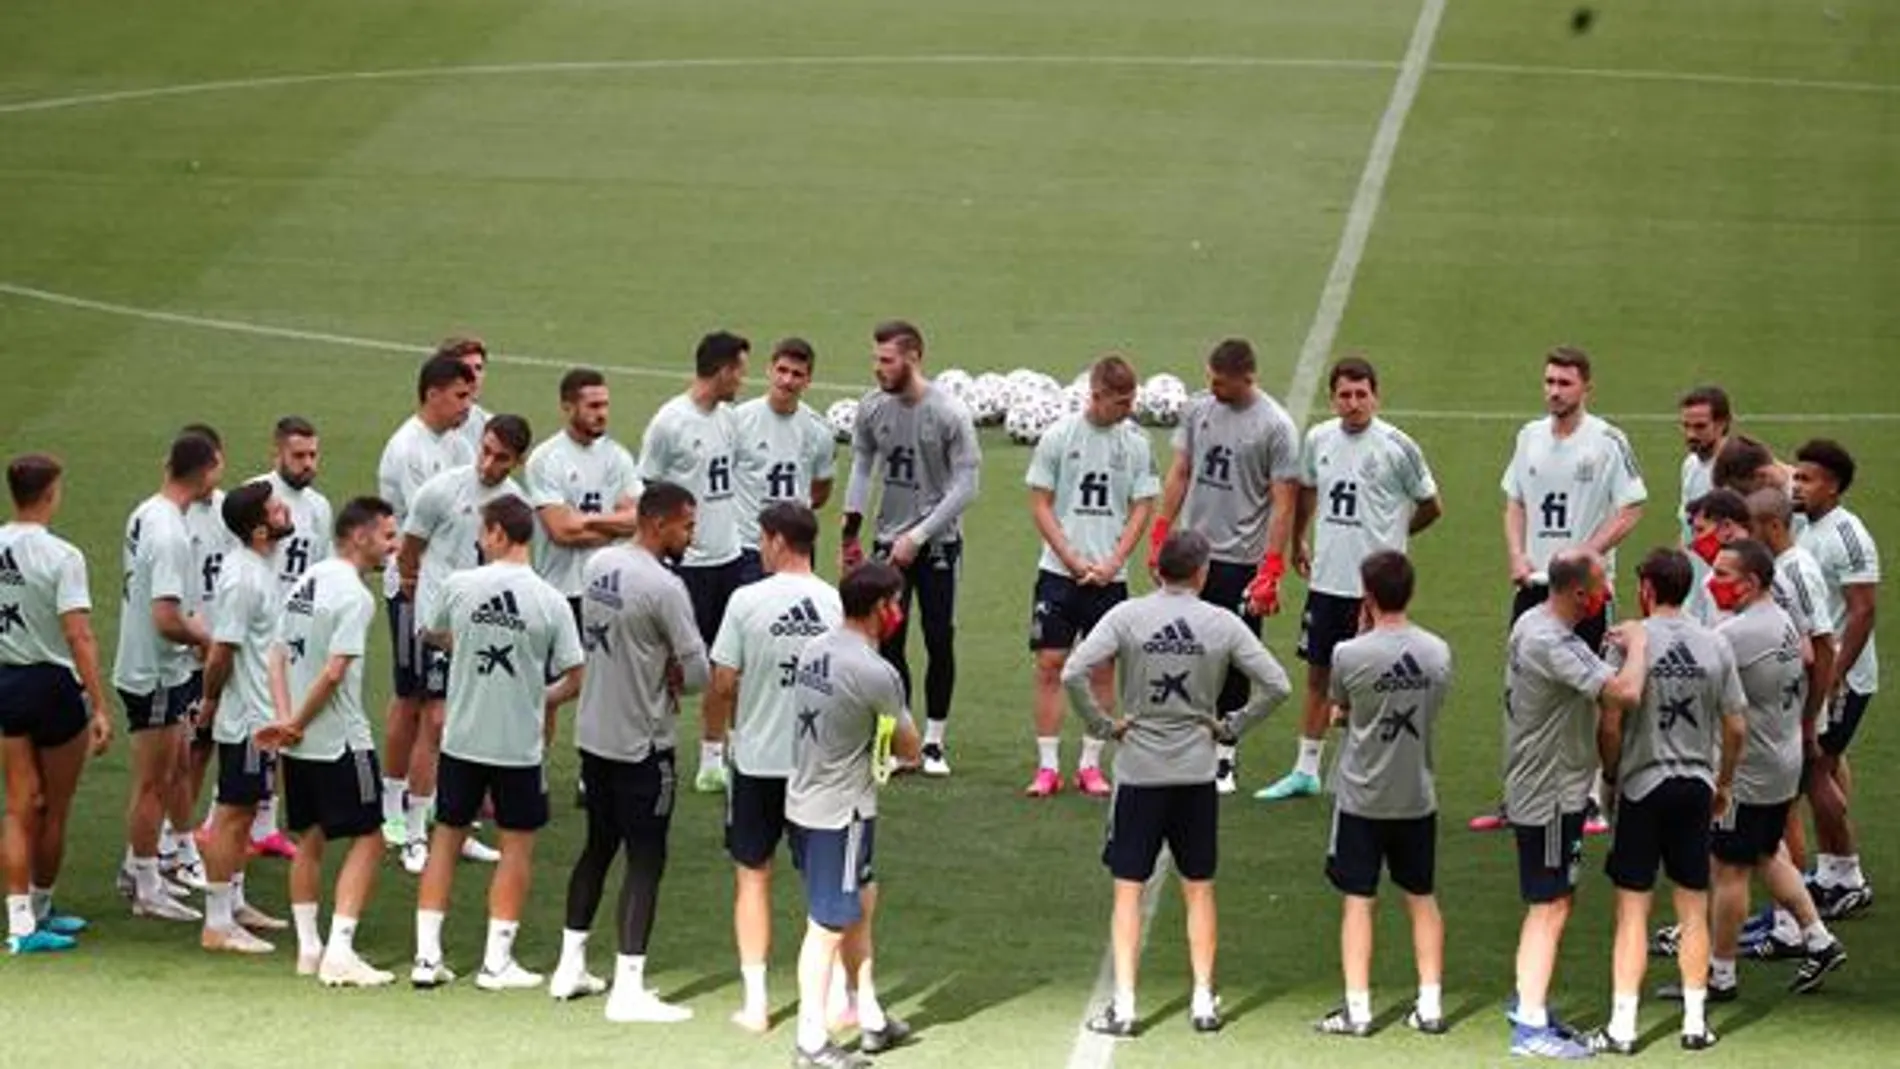 Jugadores y miembros del cuerpo técnico de la selección española